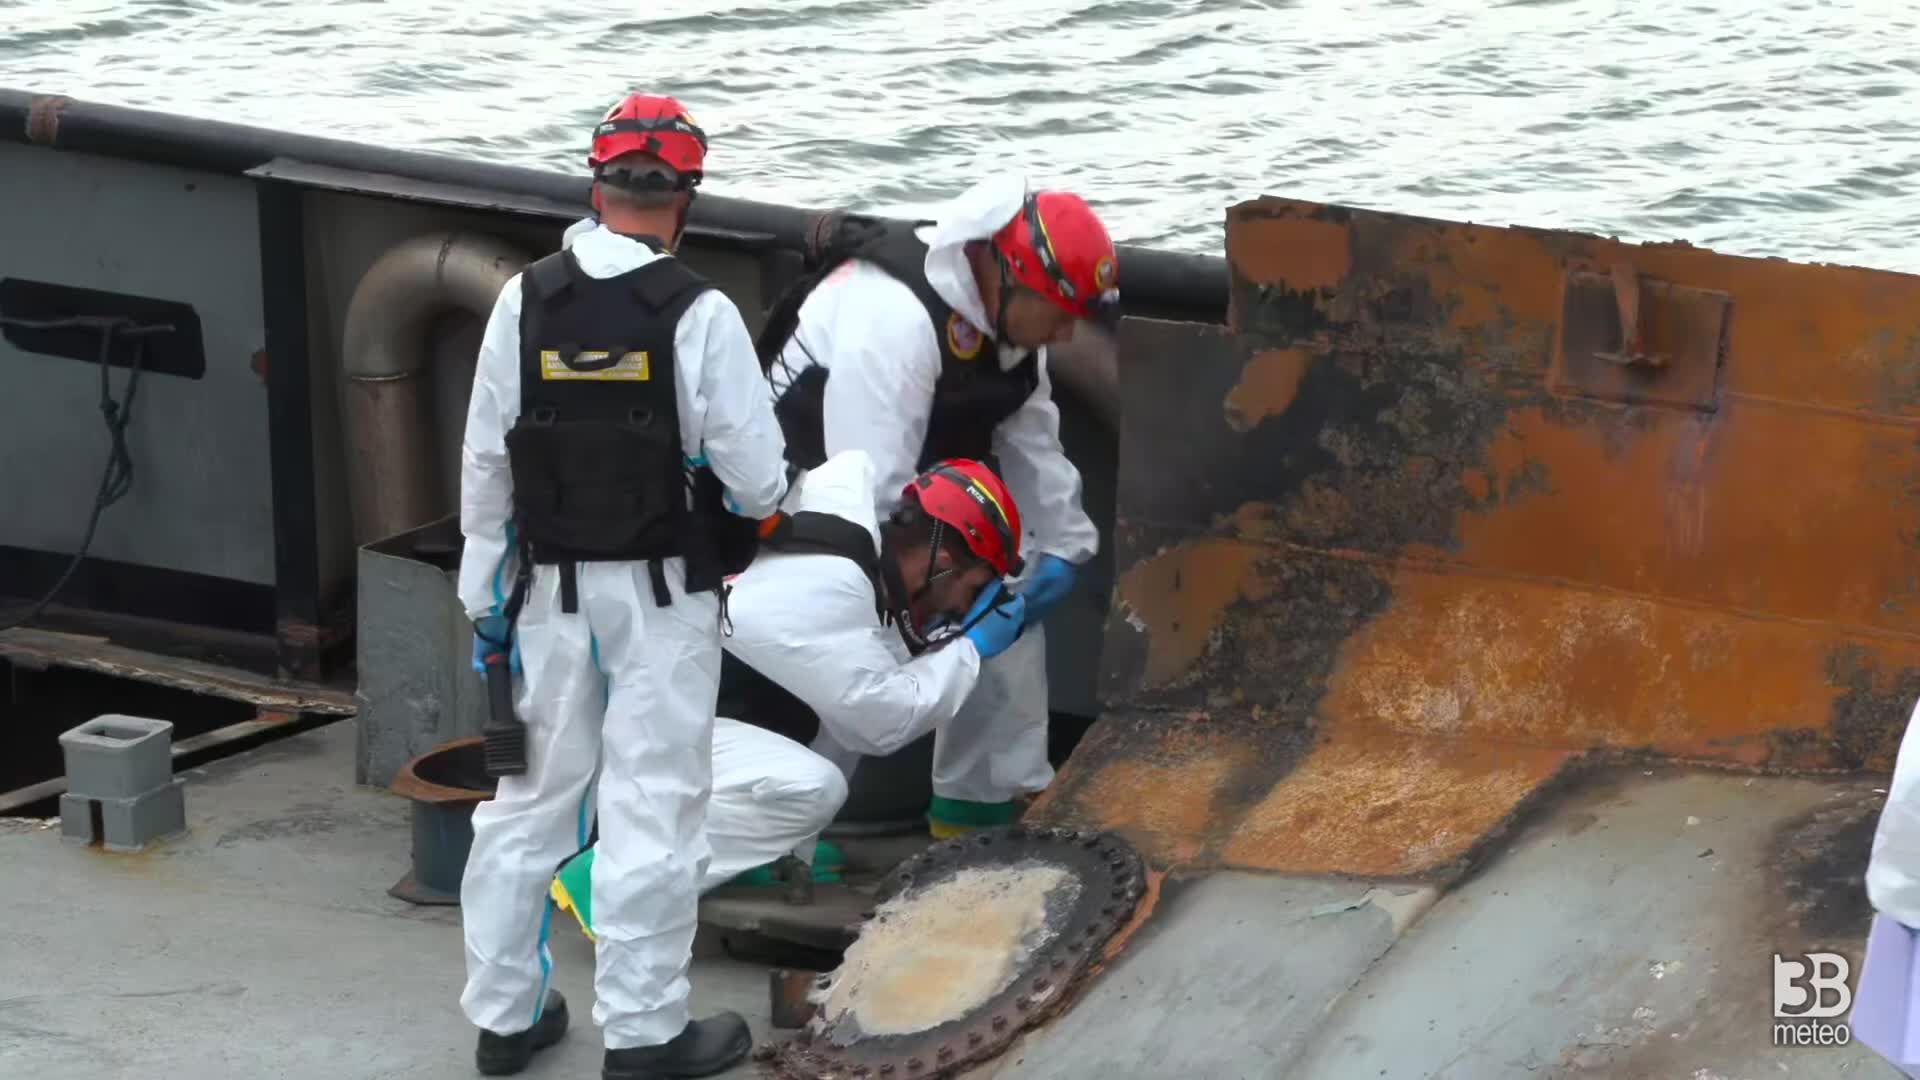 Crotone esplosione rimorchiatore: rilievi a bordo imbarcazione